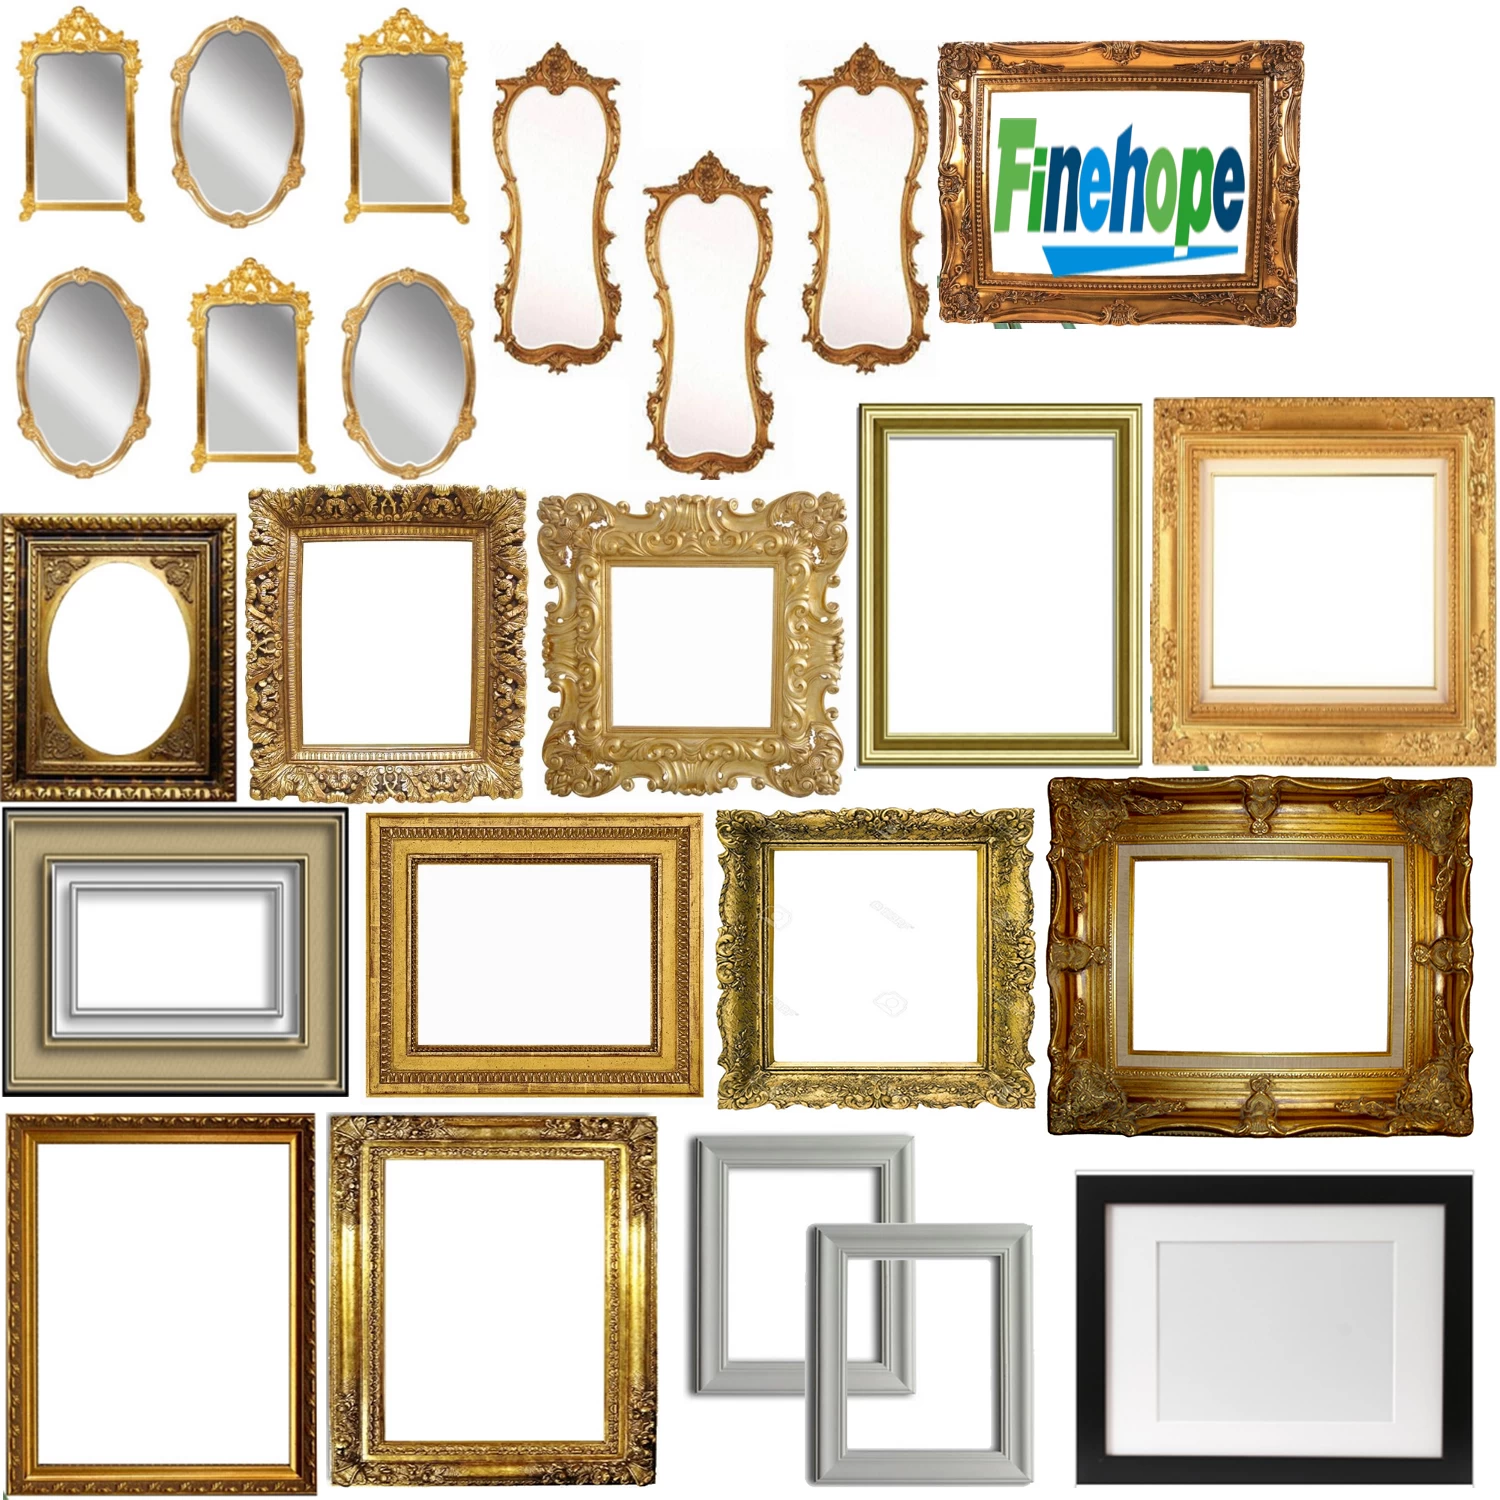 decorate mirror frame, wall frames,  round mirror frame, antique wooden photo frame, mirror photo frame